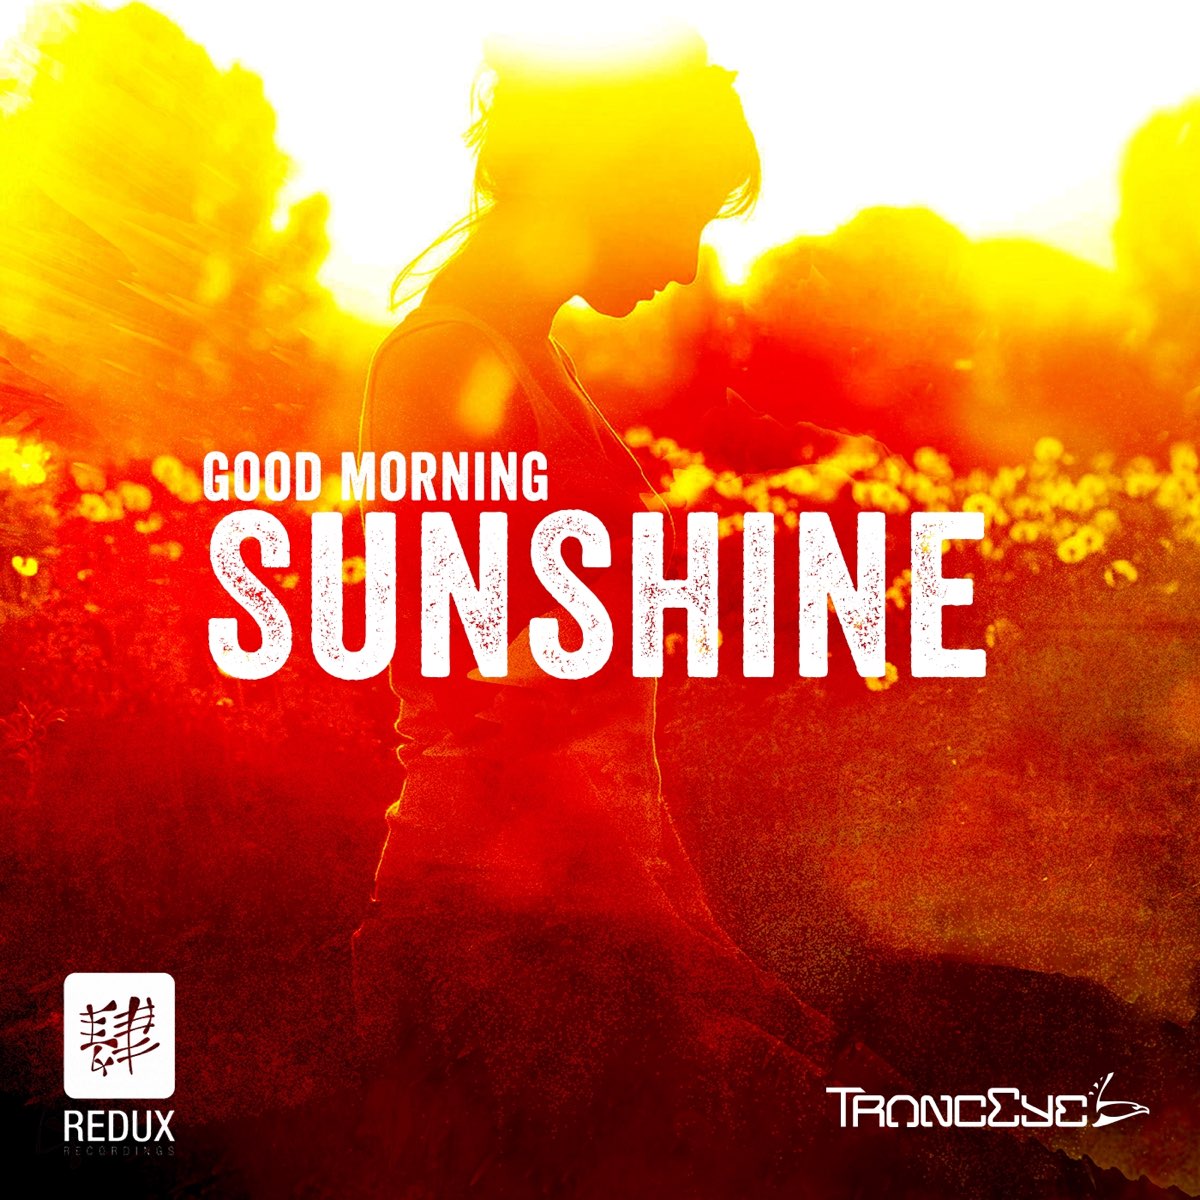 Morning shine. Good morning Sunshine. Good morning my Sunshine. Good morning Sunshine картинки. TRANCEYE good morning Sunshine 2014 Mix.